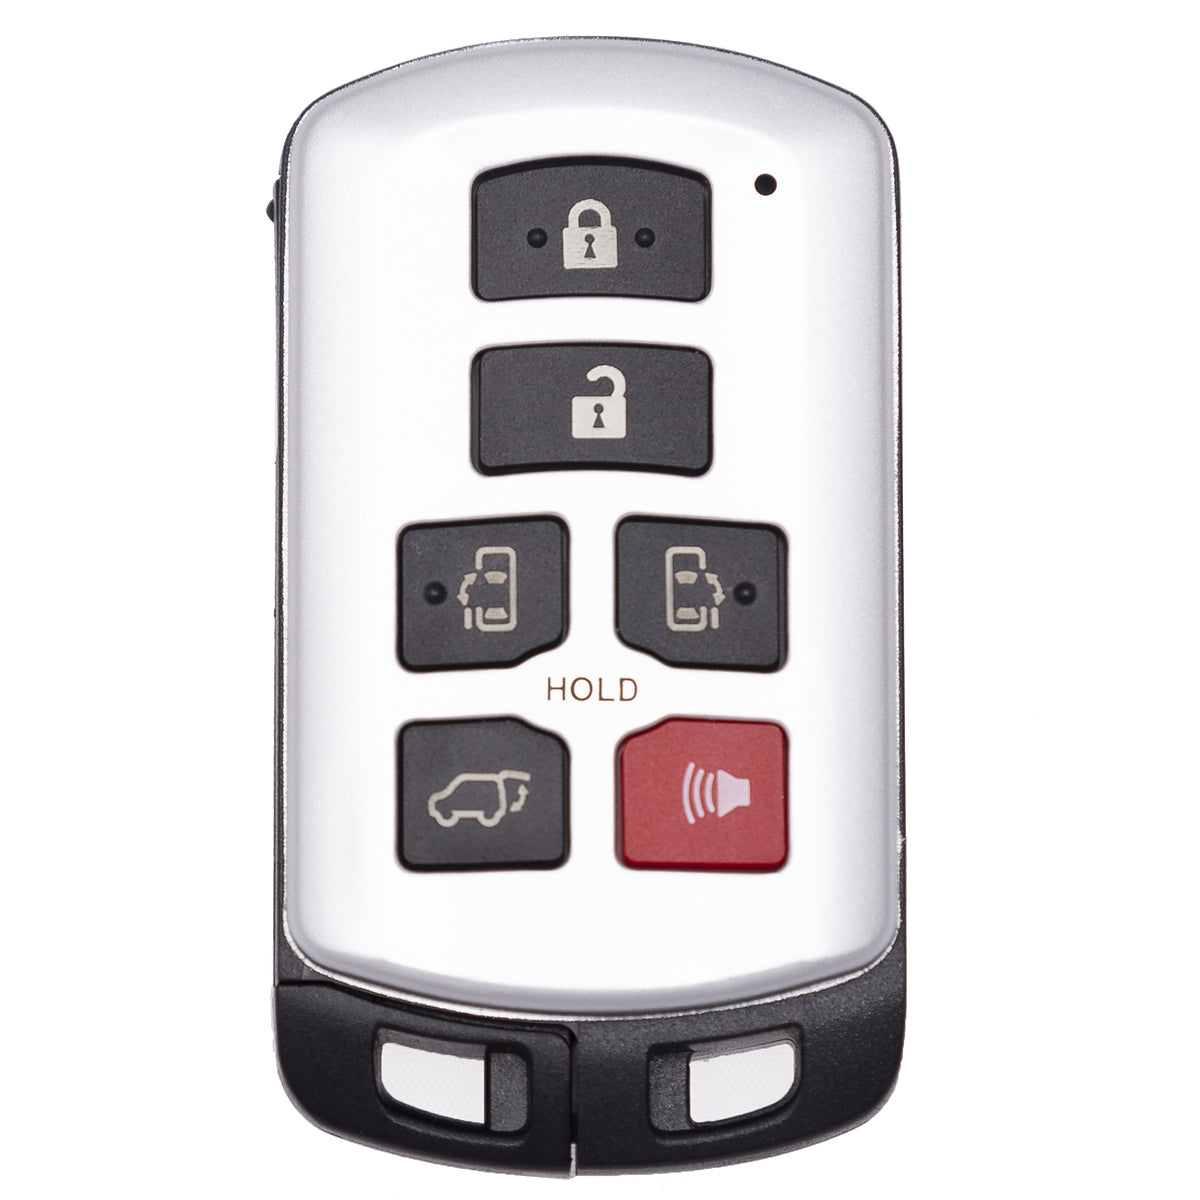 2019 Toyota Sienna Smart Key 6B FCC# HYQ14ADR